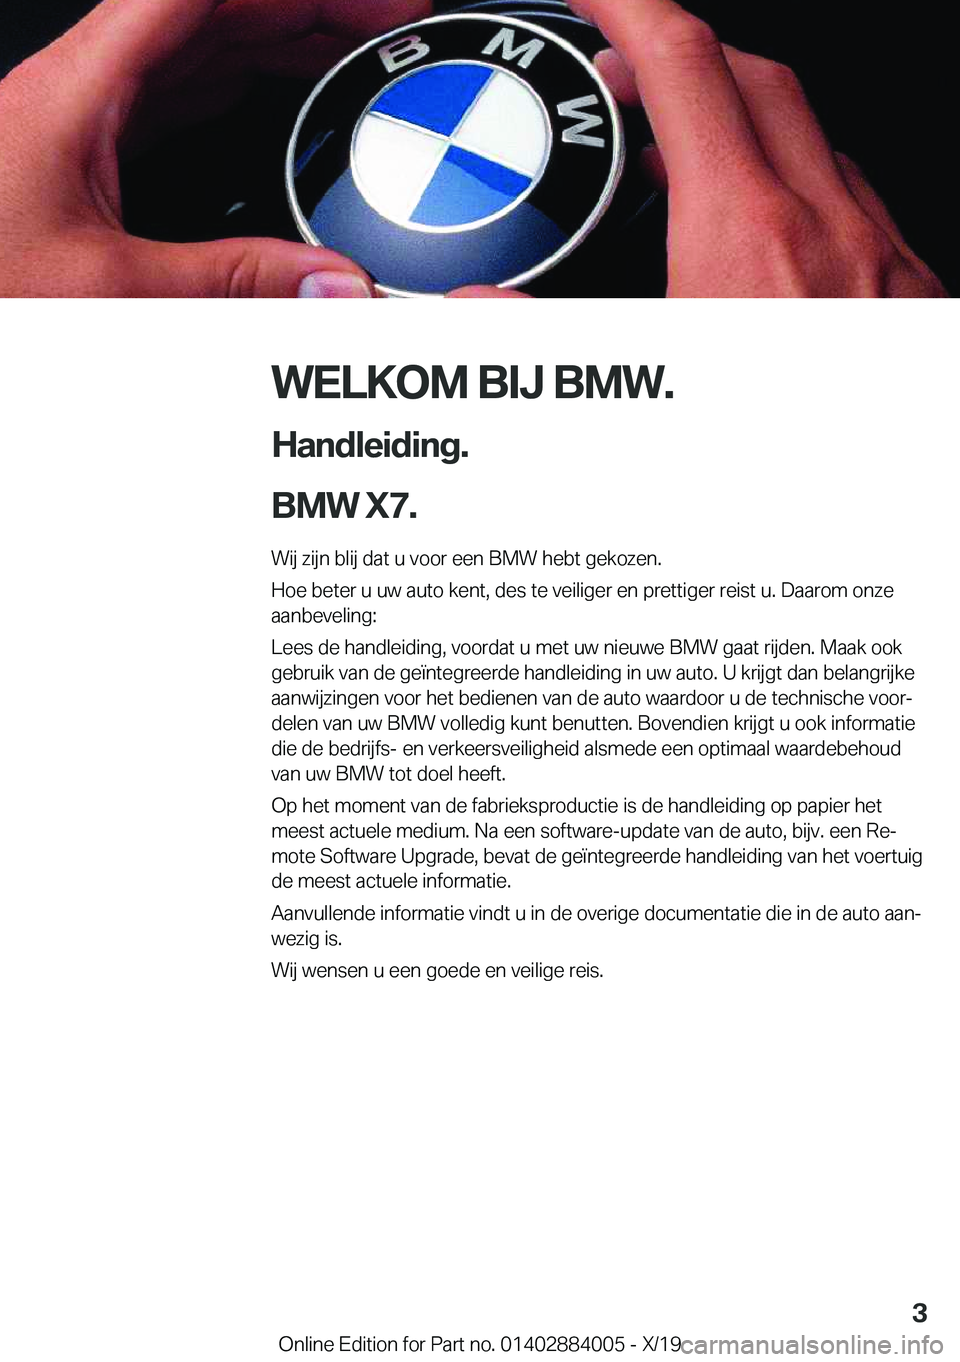 BMW X7 2020  Instructieboekjes (in Dutch) �W�E�L�K�O�M��B�I�J��B�M�W�.
�H�a�n�d�l�e�i�d�i�n�g�.
�B�M�W��X�7�. �W�i�j��z�i�j�n��b�l�i�j��d�a�t��u��v�o�o�r��e�e�n��B�M�W��h�e�b�t��g�e�k�o�z�e�n�.�H�o�e��b�e�t�e�r��u��u�w��a�u�t�